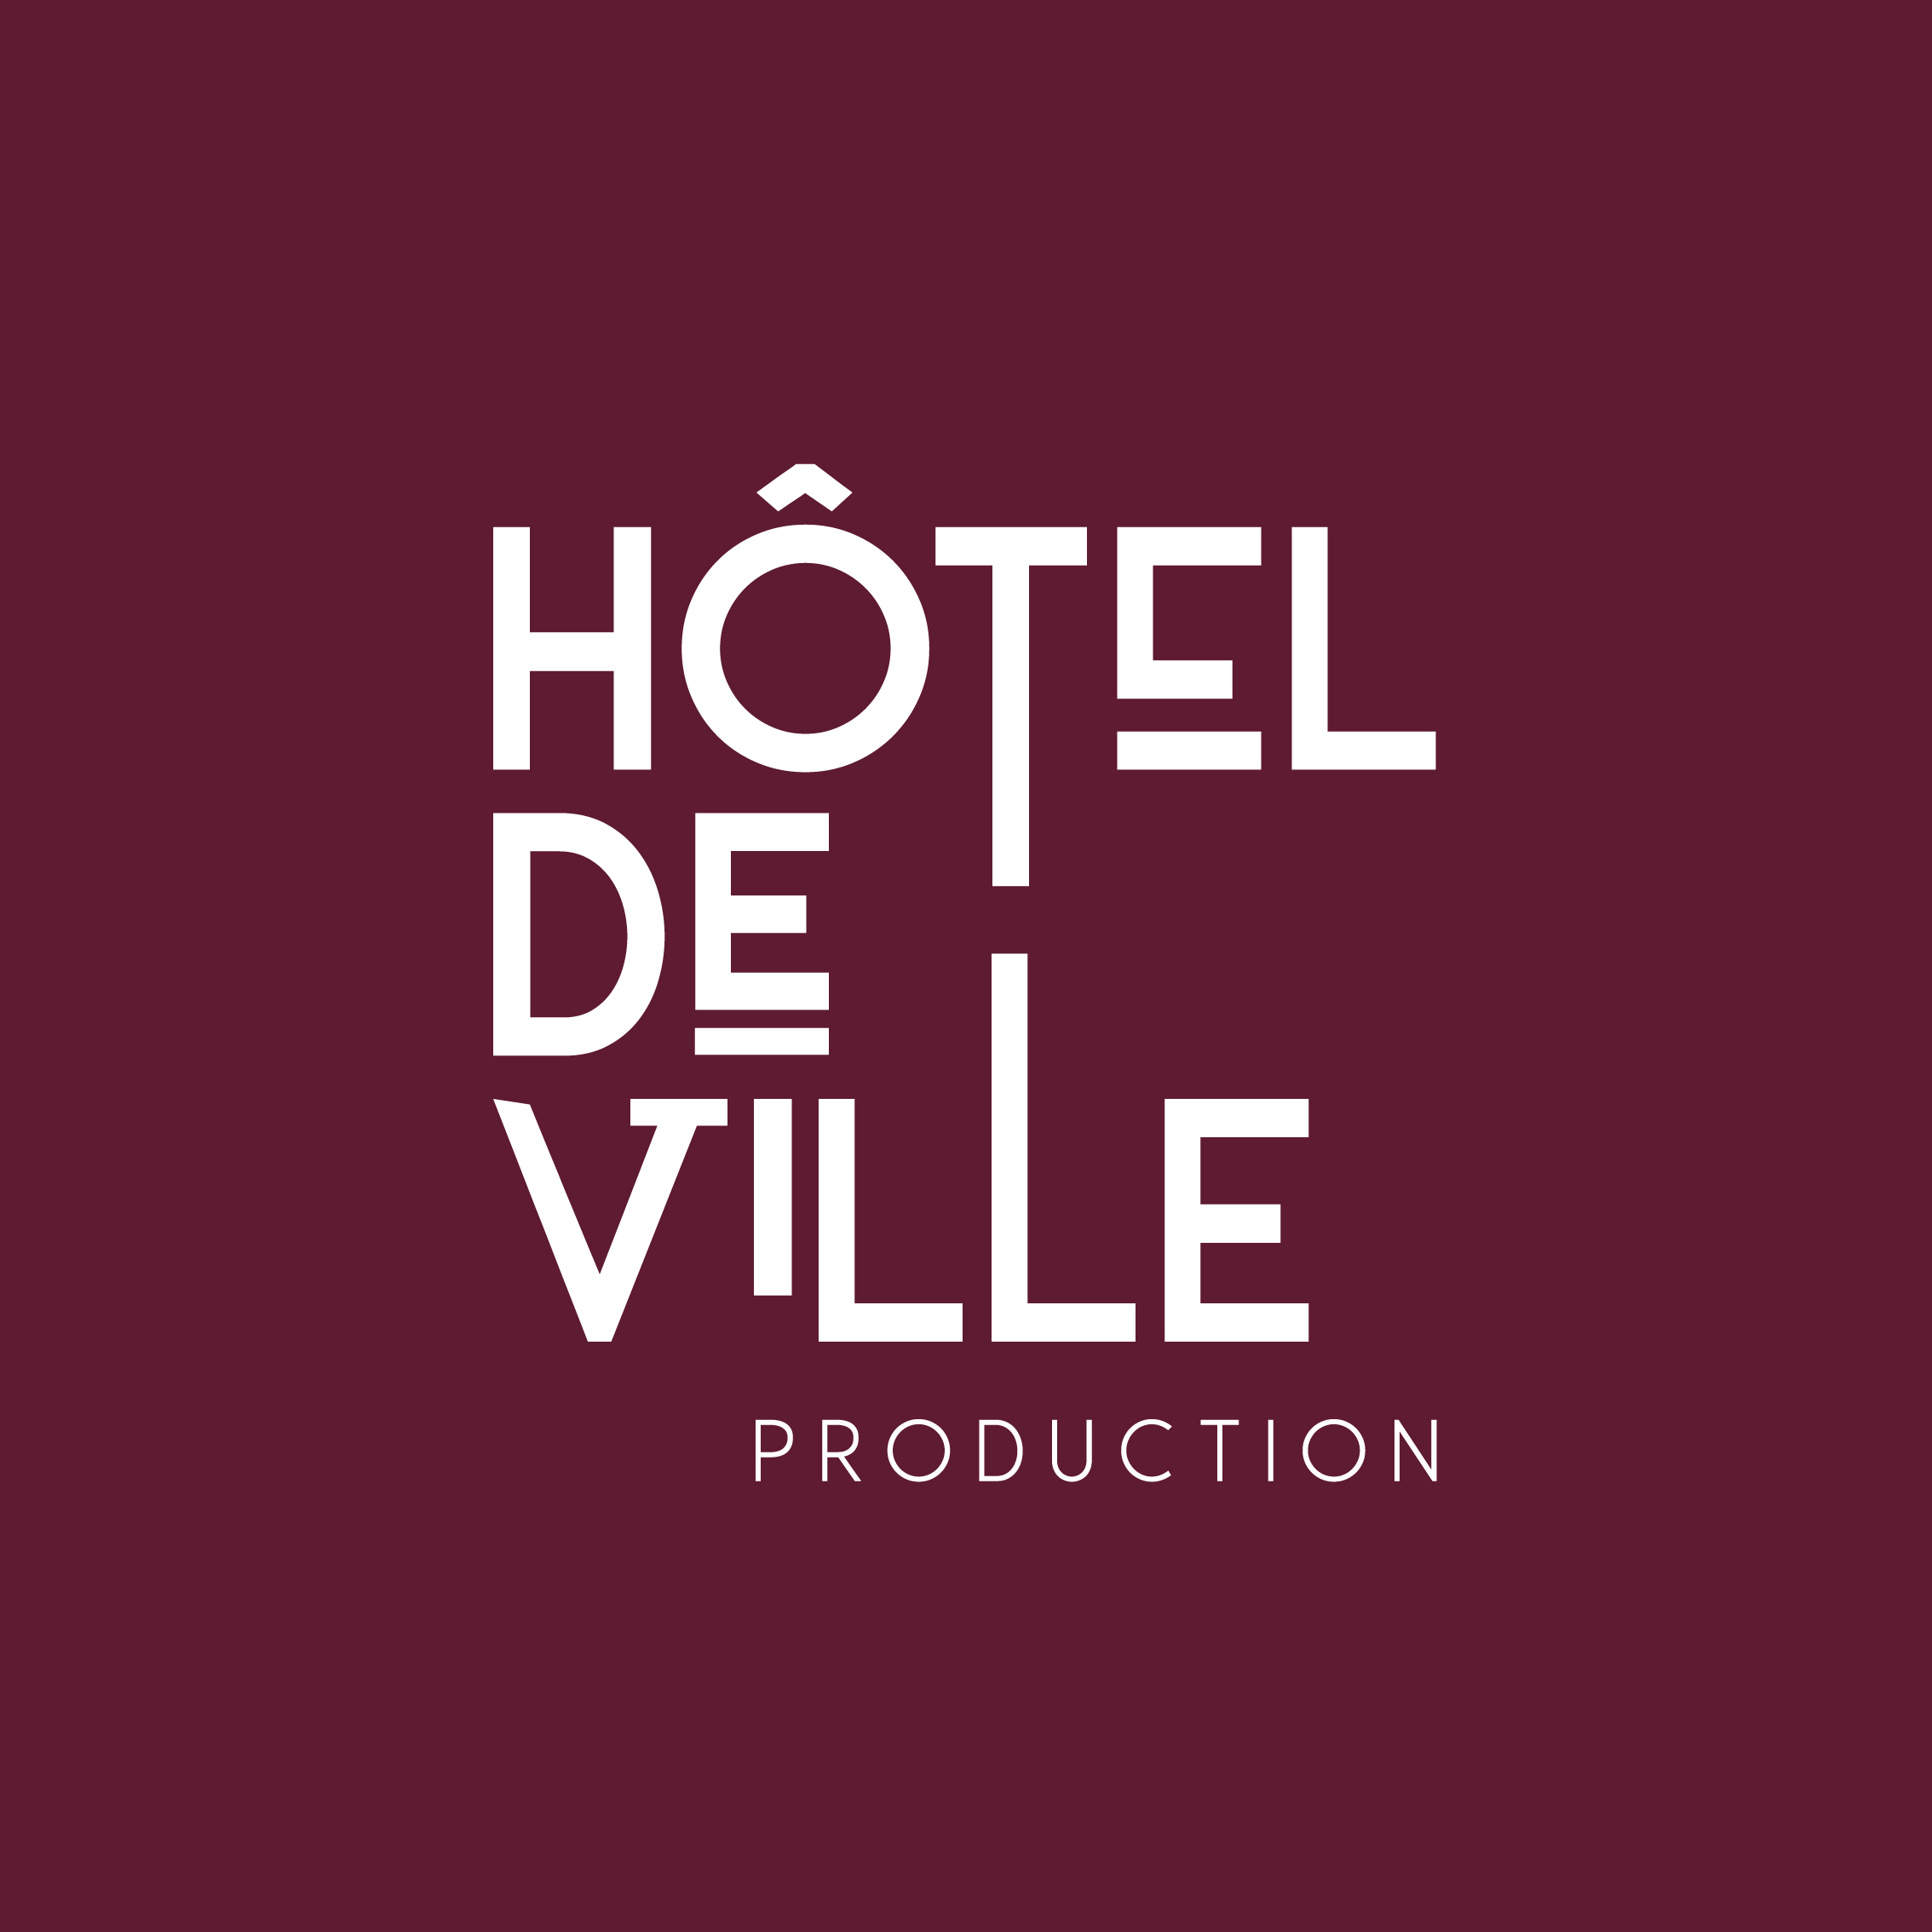 Sarahlives-IG-projets-HoteldeVille